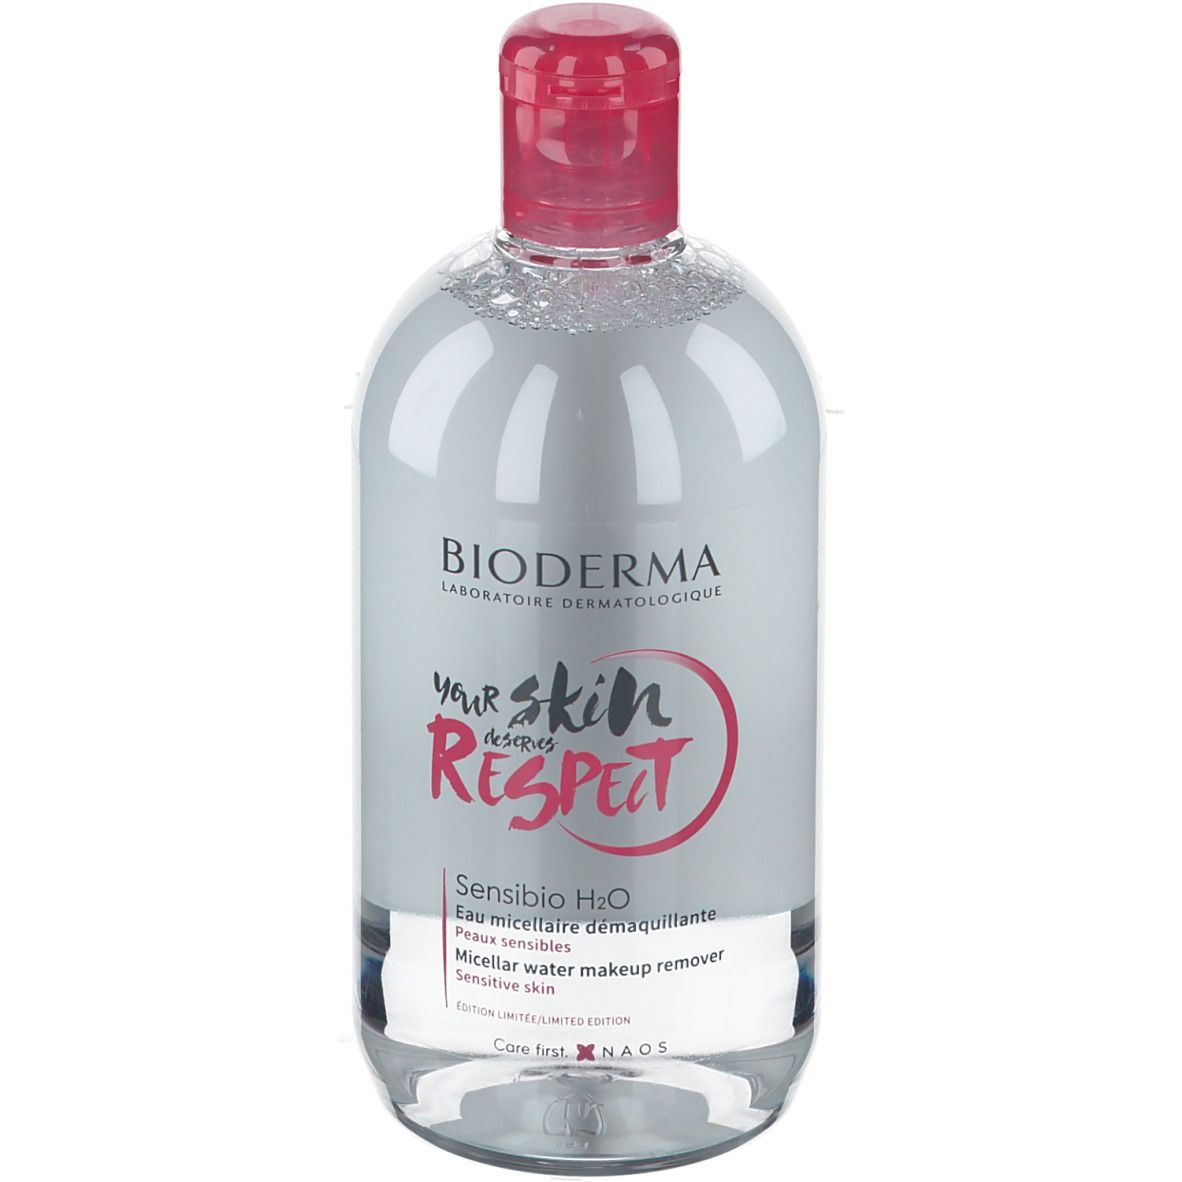 NAOS Bioderma Sensibio H2O Reinigendes Mizellenwasser Limited Edition